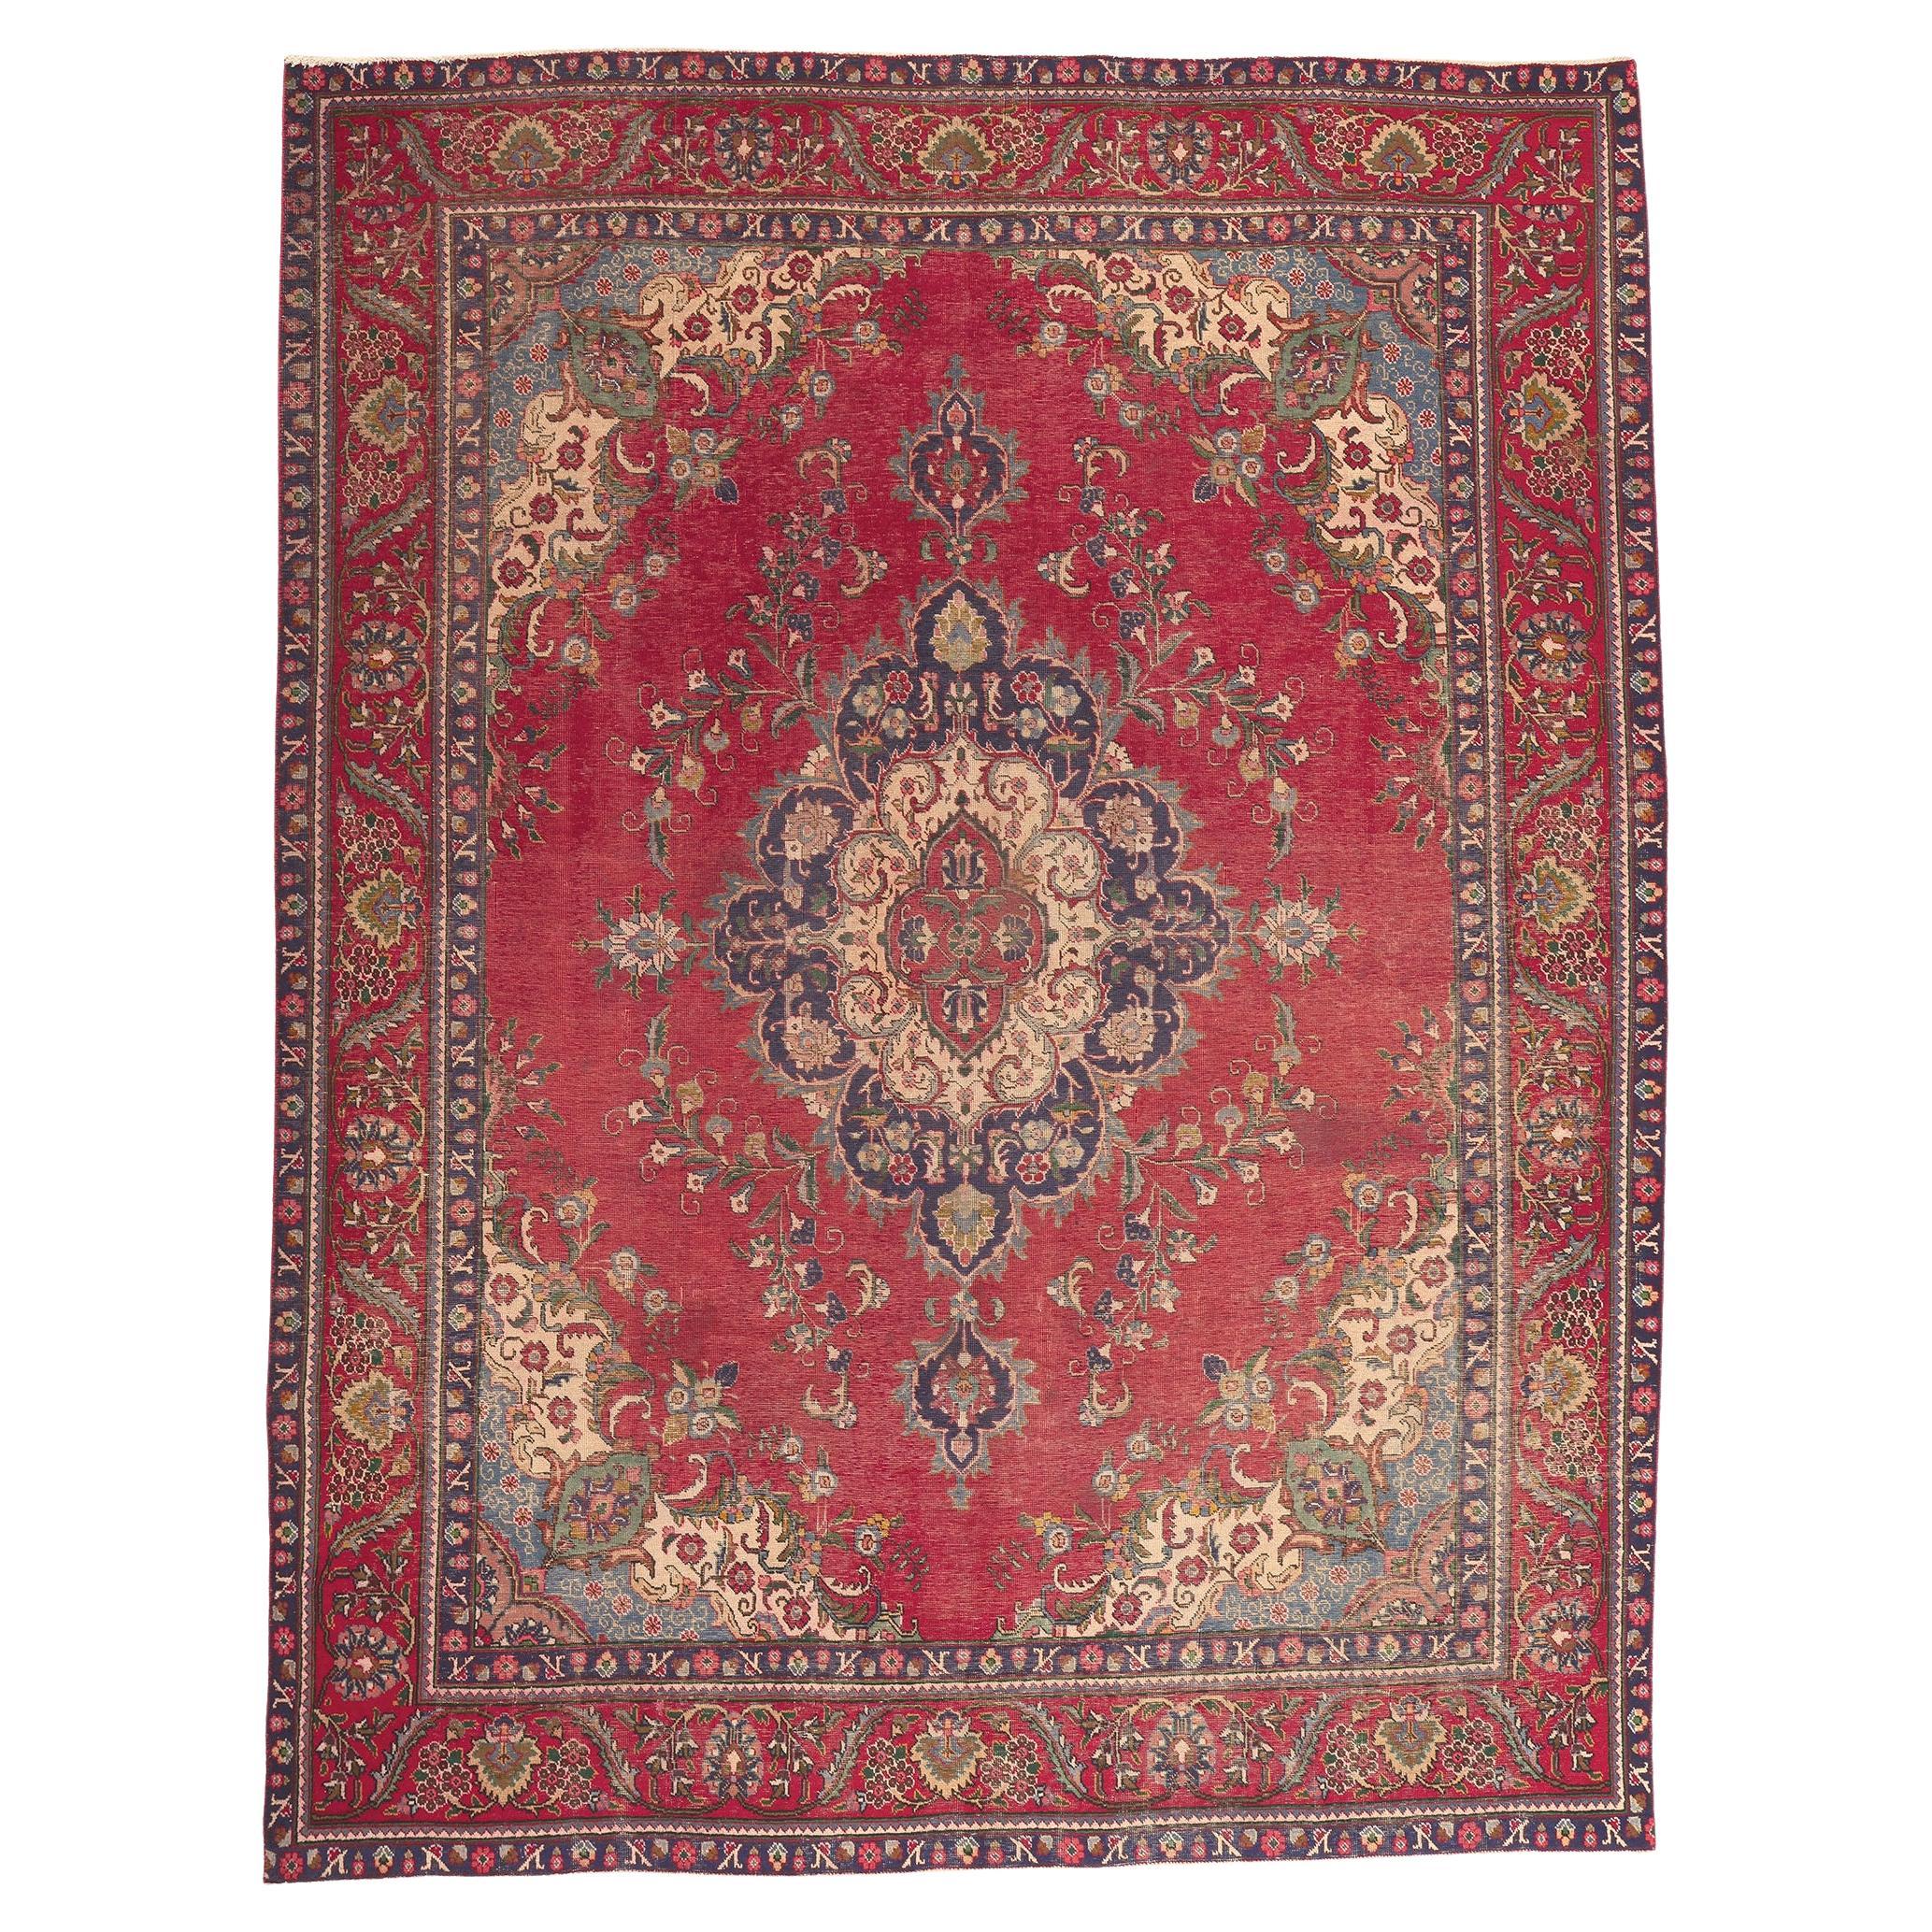 Antik-getragener persischer Täbriz-Teppich, rustikale Sensibilität trifft auf nostalgischen Charme